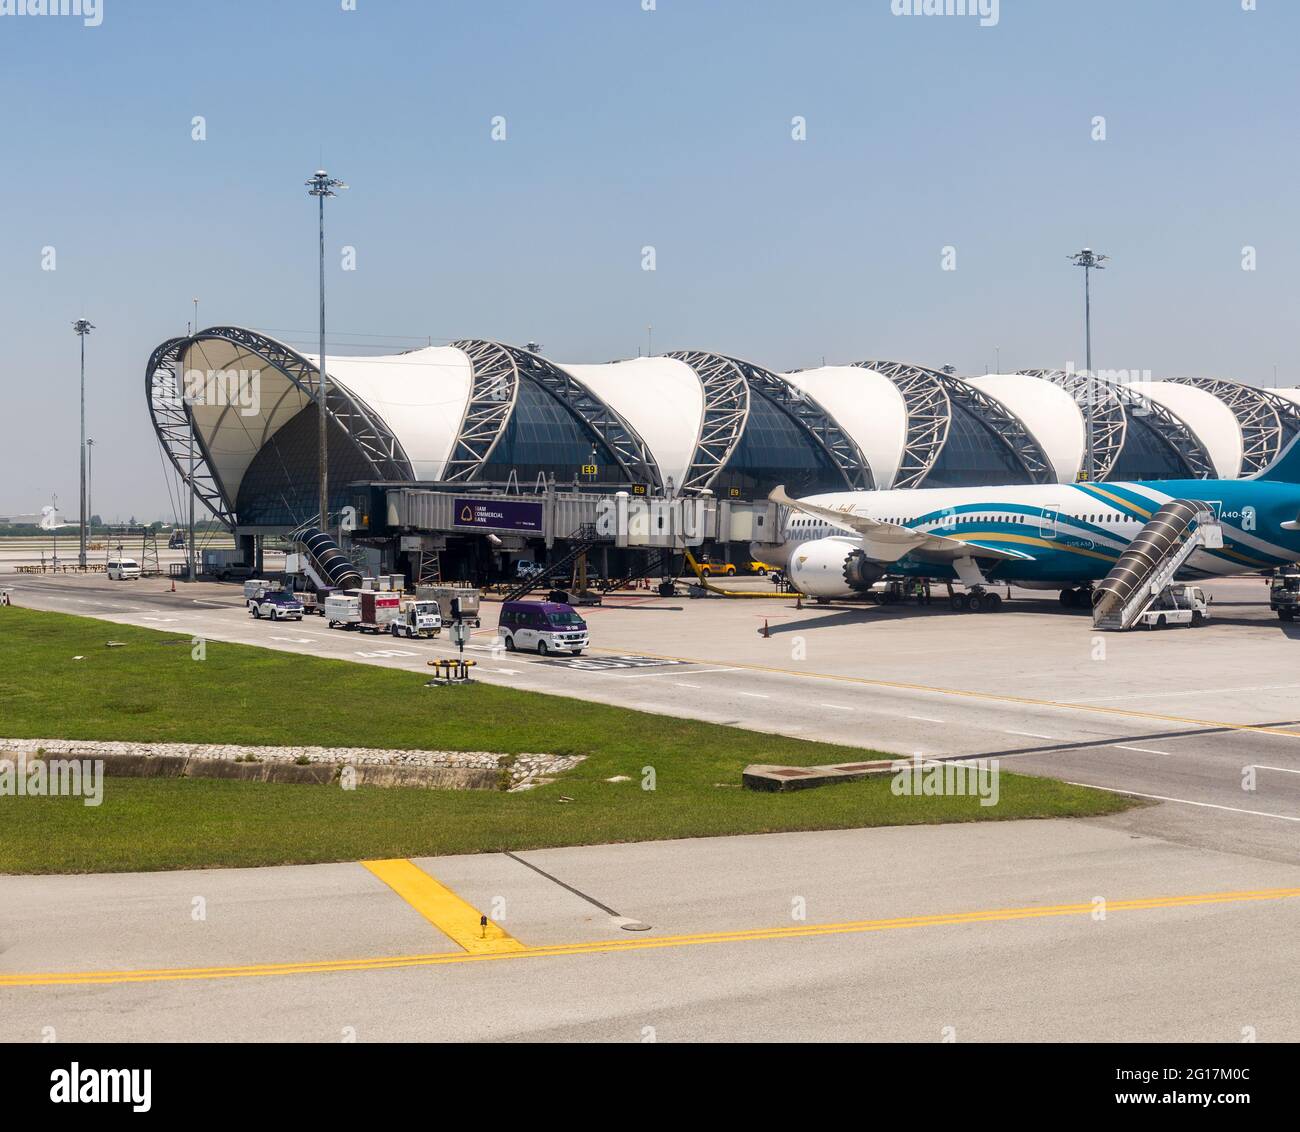 Departure gates and aircraft, Suvarnabhumi Airport, Bangkok, Thailand Stock Photo